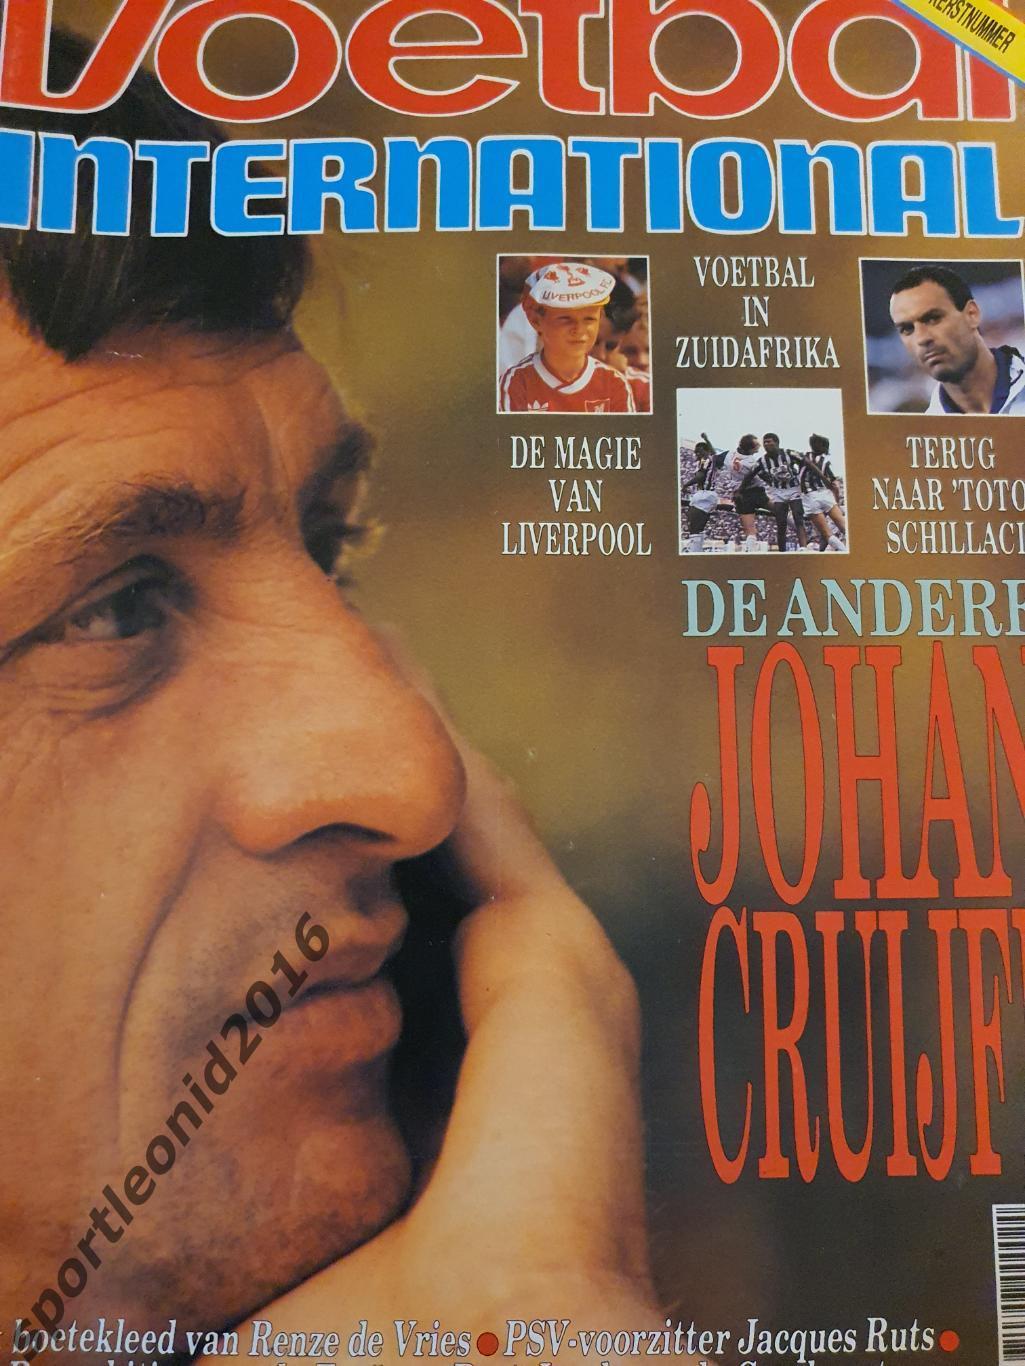 Voetbal International 1990 и 1989 годов выпуска.12 журналов.2 6